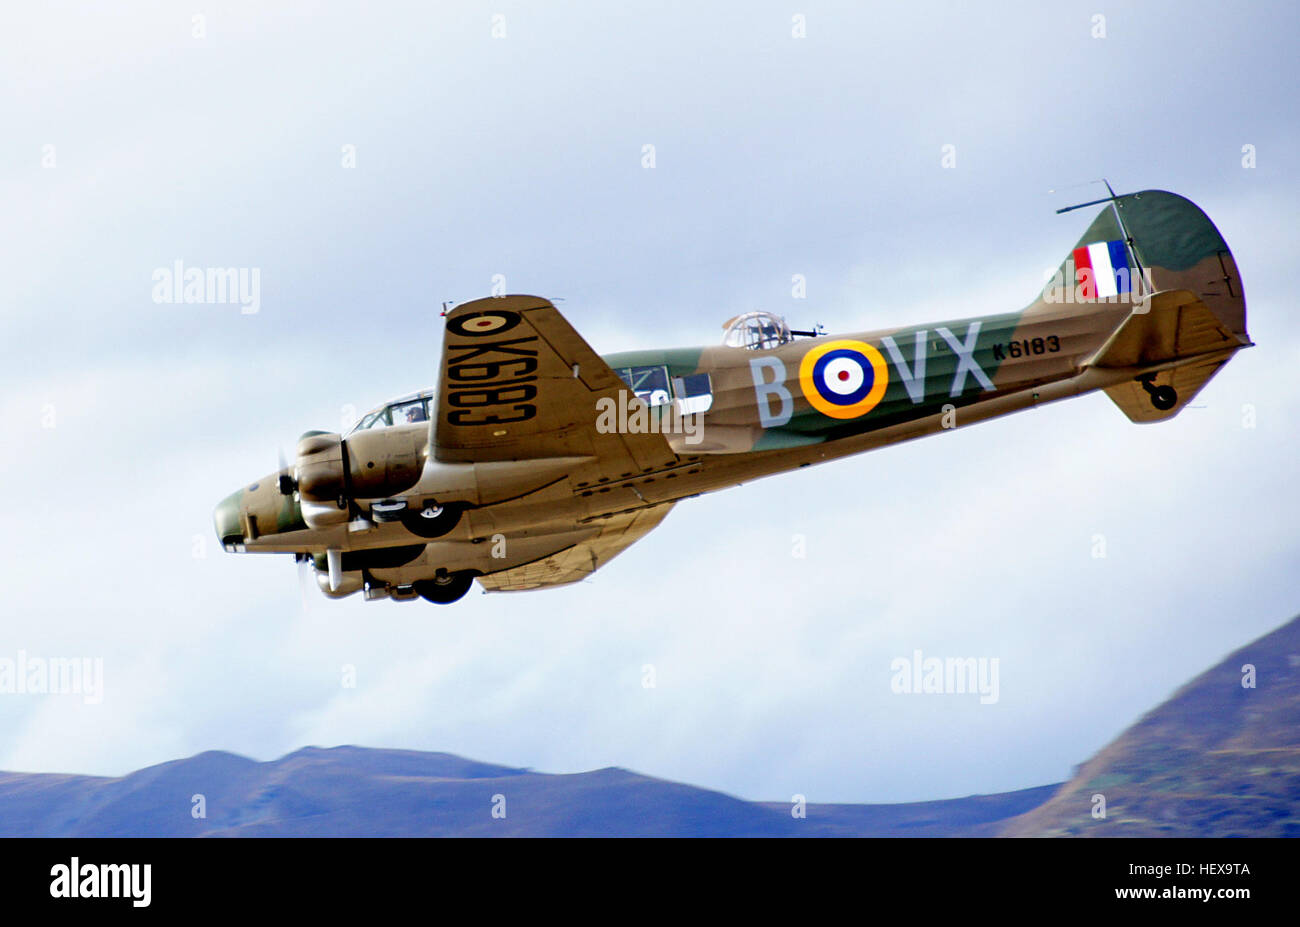 Le formateur Avro Anson Avro Anson était un bimoteur britannique, l'aéronef polyvalent qui a servi avec la Royal Air Force, Fleet Air Arm, Royal Canadian Air Force et de nombreuses autres armées de l'air avant, pendant et après la Seconde Guerre mondiale. Vitesse maximale : 303 km/h Longueur : 13 m Envergure : 17 m premier vol : 24 mars 1935 a introduit la retraite : 1936 : le 28 juin, 1968 Fabricant : Avro Banque D'Images